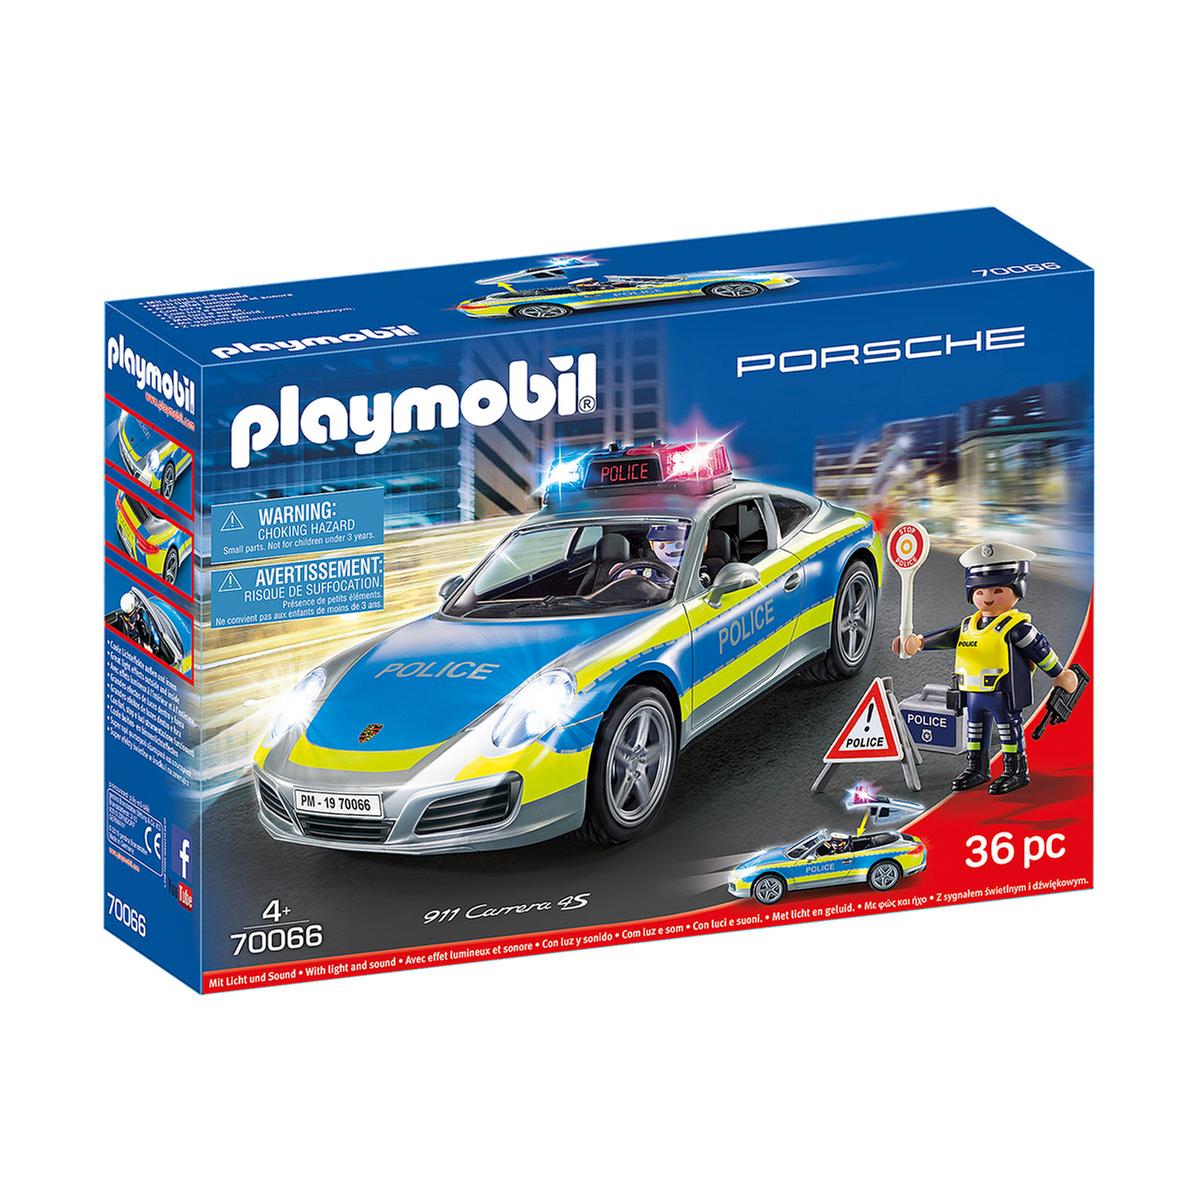 Playmobil - Porsche 911 Carrera Policía (70066) | City Action Policia |  Toys"R"Us España